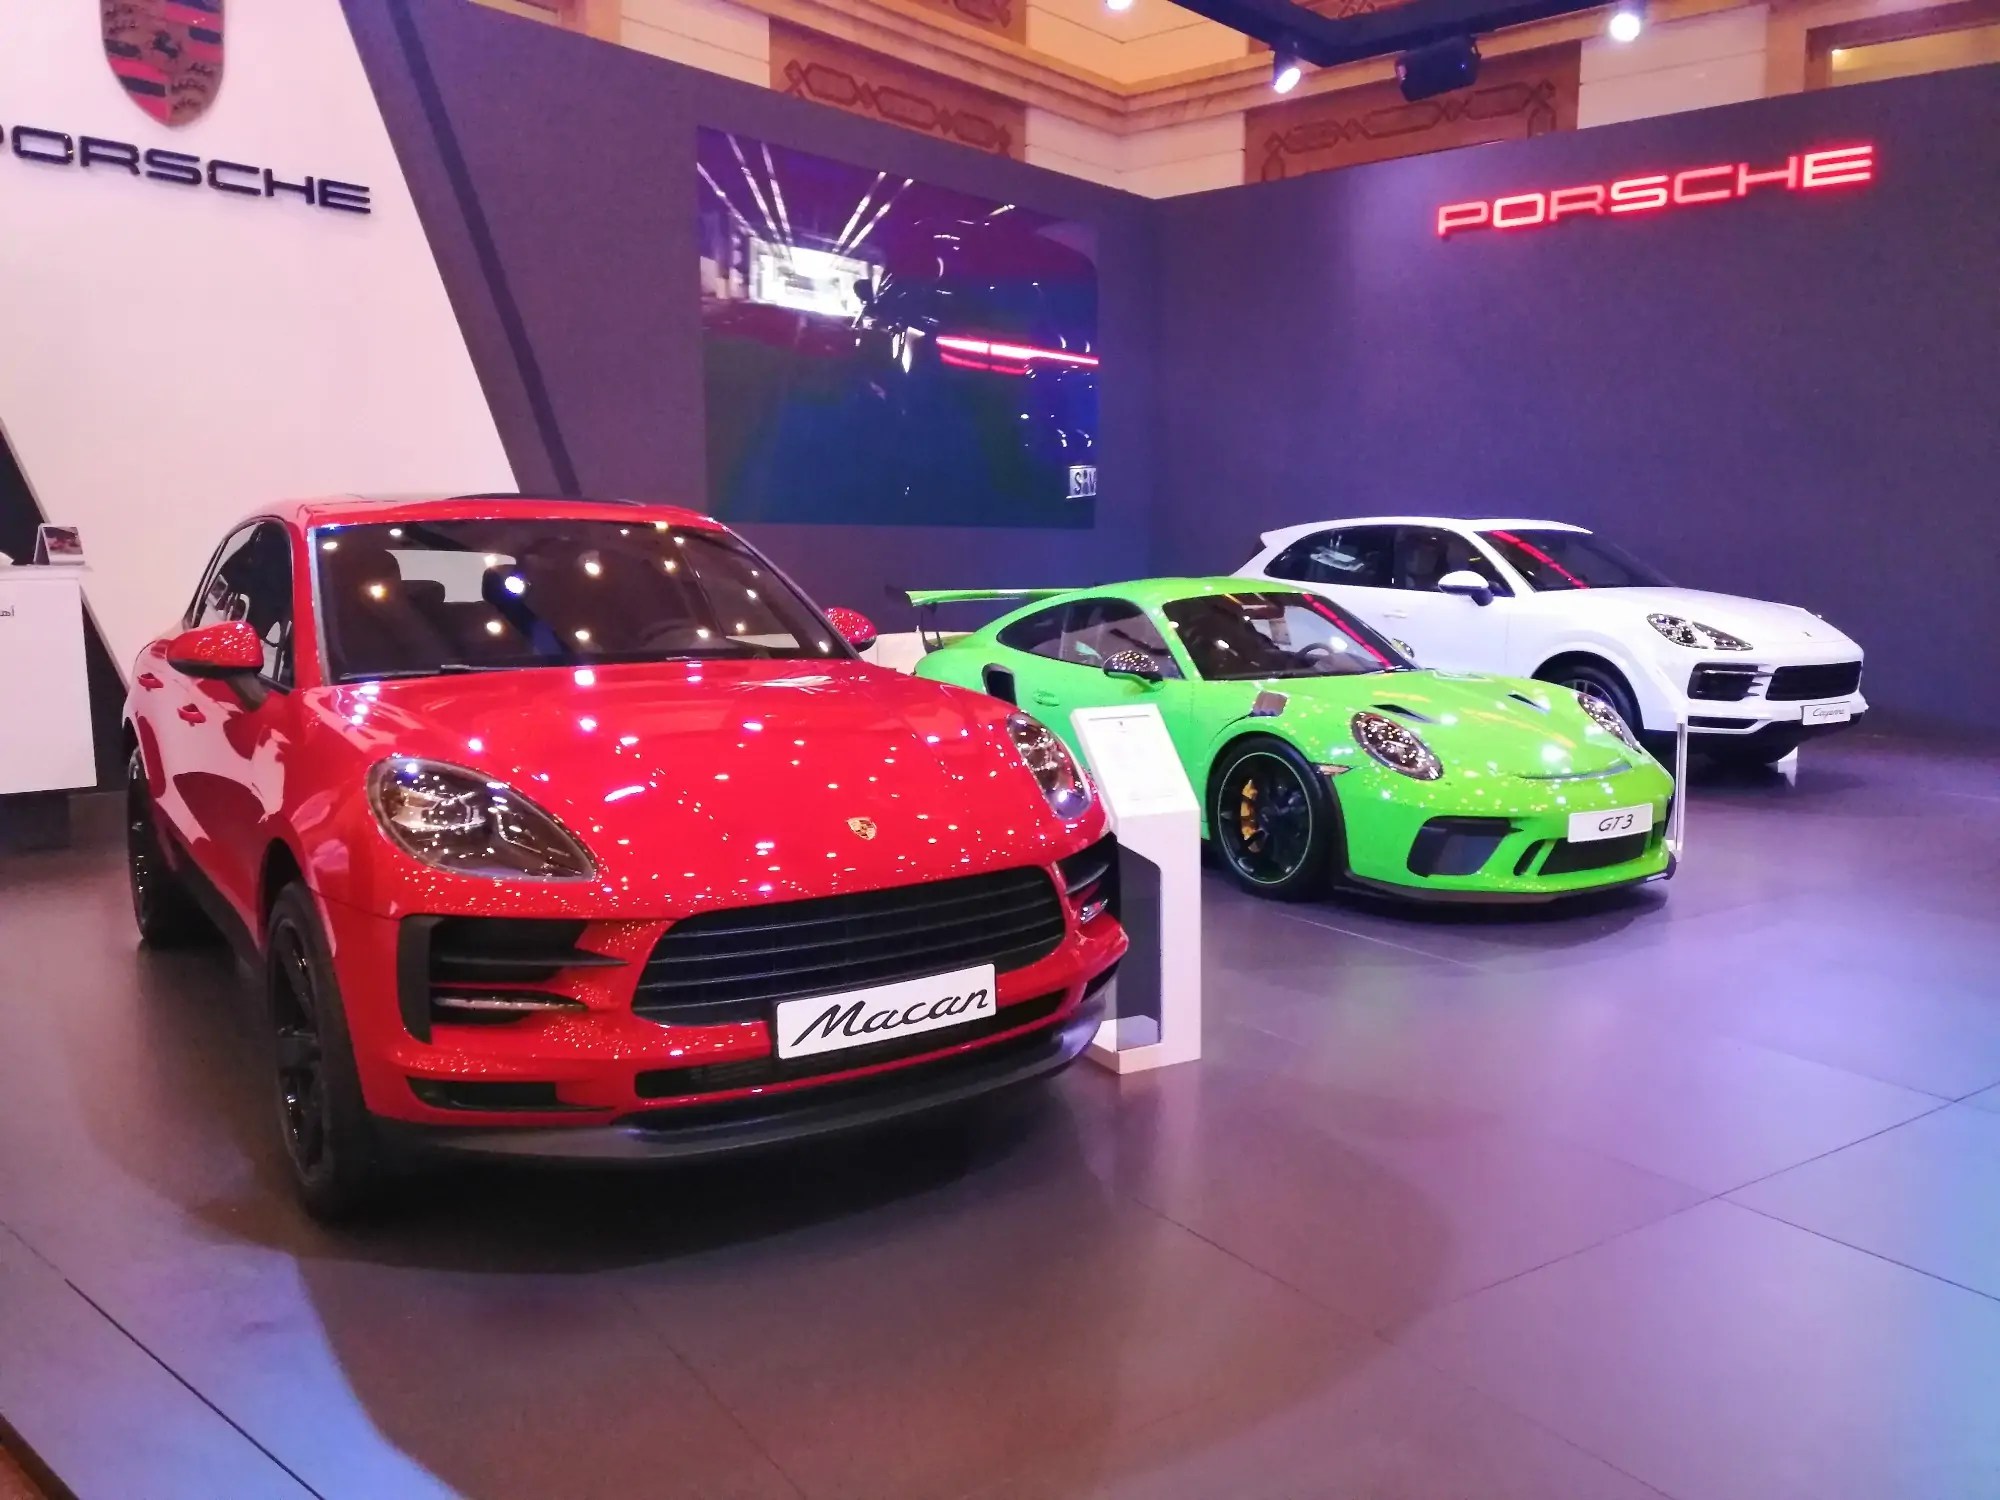 انطلاق معرض إكسس 12 للسيارات الفارهة 2019 في جدة